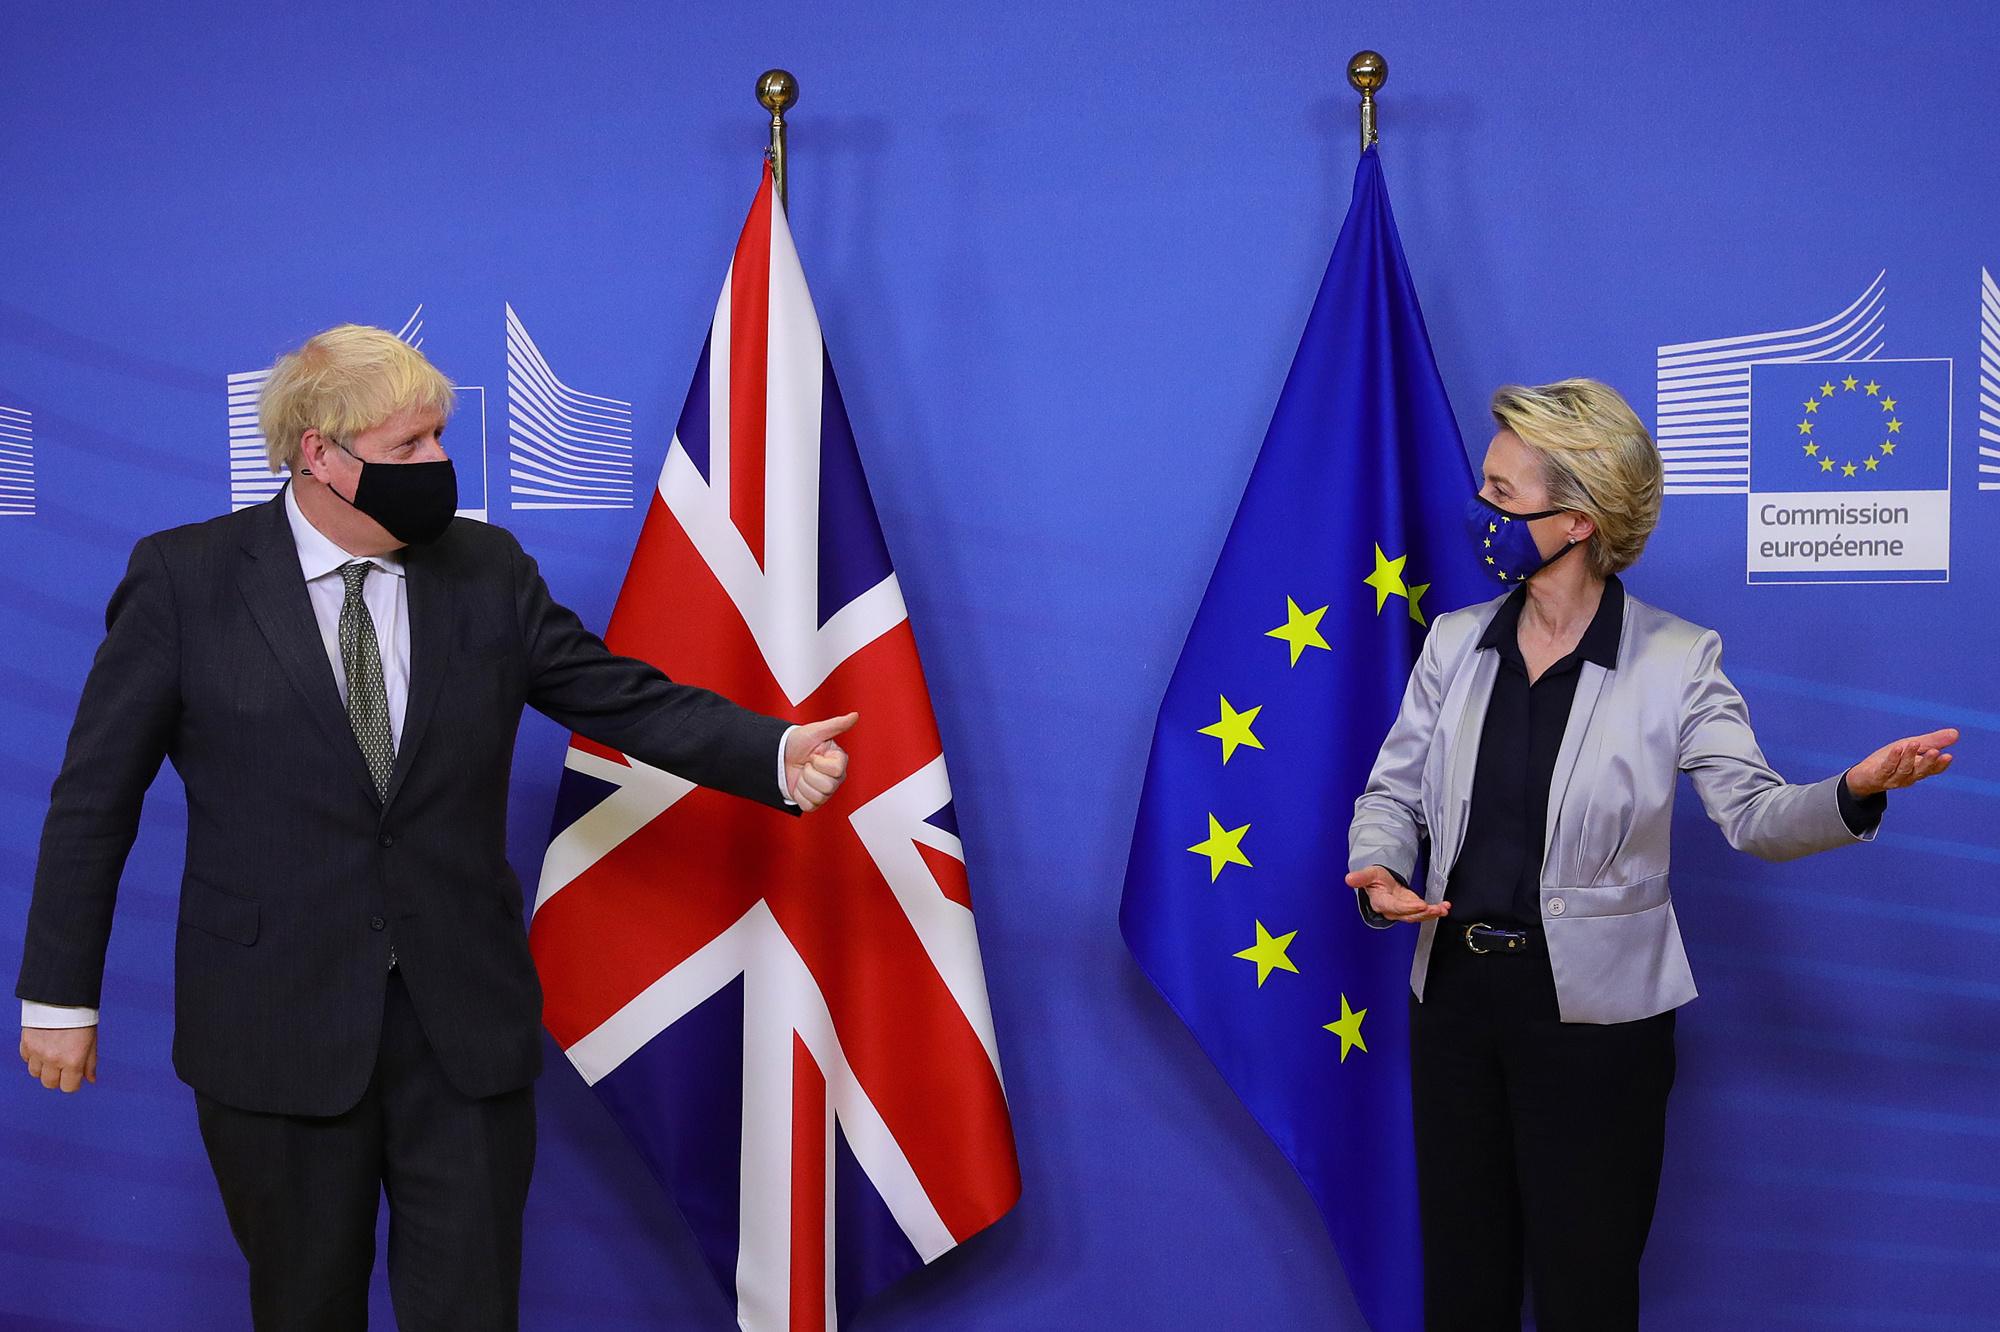 Quarante-sept ans après son adhésion à l'Union européenne, le Royaume-Uni quitte l'UE le 31 janvier 2020. Conformément à l'accord de retrait, le Royaume-Uni est désormais officiellement un pays tiers et ne participe dès lors plus au processus décisionnel de l'UE. L'UE et le Royaume-Uni sont toutefois convenus d'une période de transition, qui durera jusqu'au 31 décembre 2020.